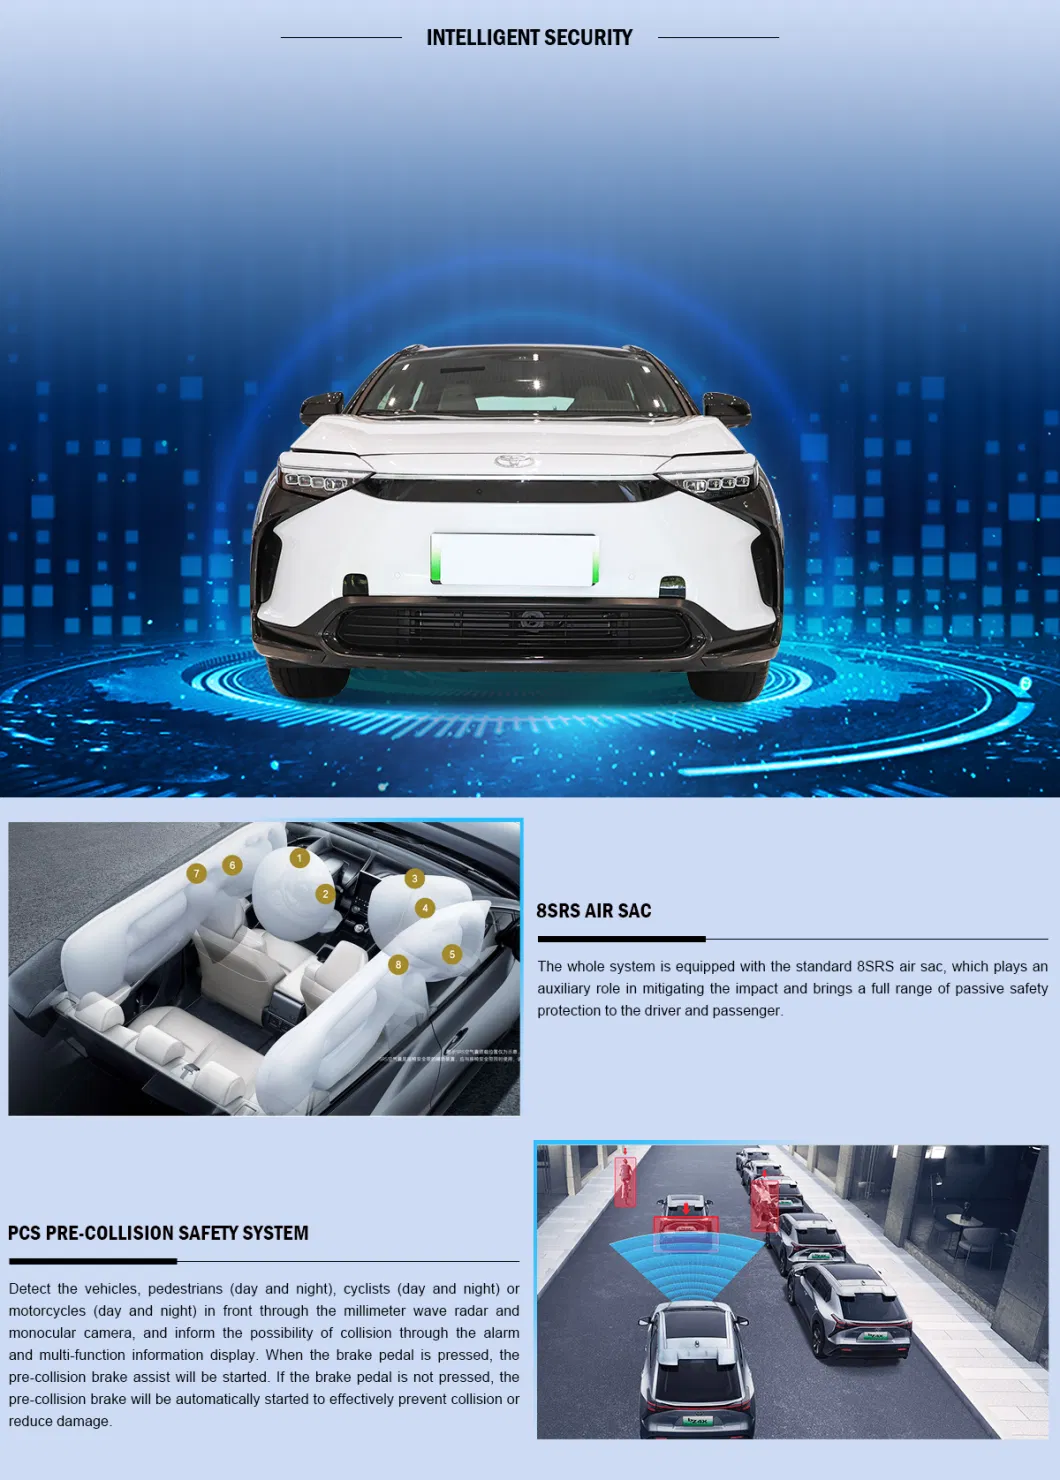 GAC-Toyo-Ta Bz4X Series 2022 Two-Drive Elite Joy Edition 400km Range Electric Car SUV Vehicles EV Mini Car Cars